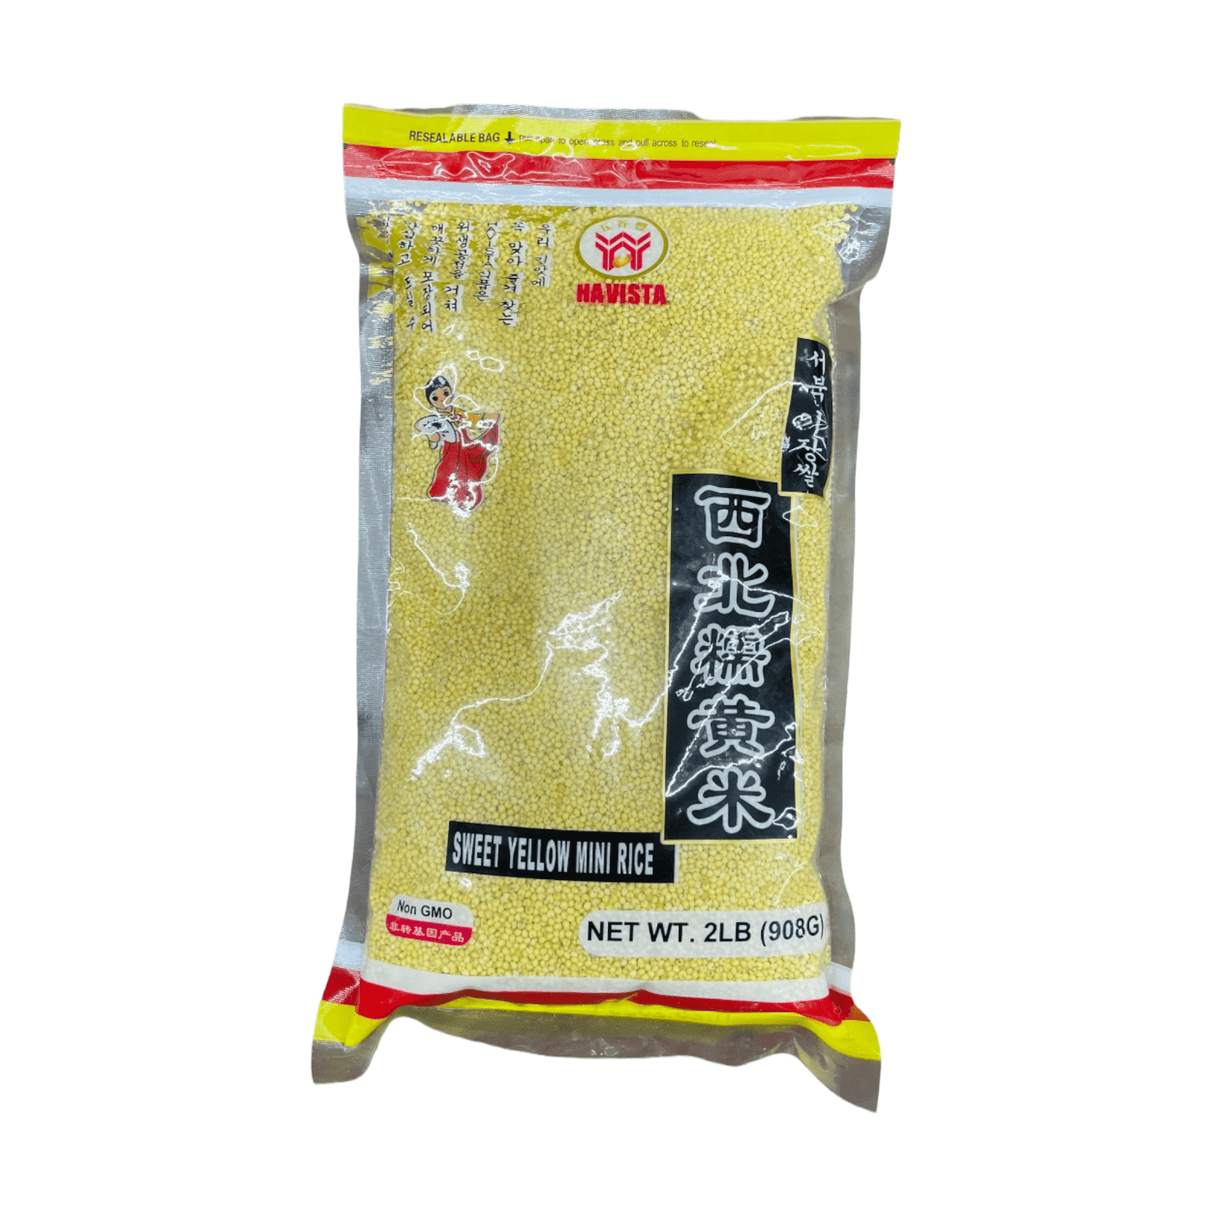 Havista Sweet Yellow Mini Rice